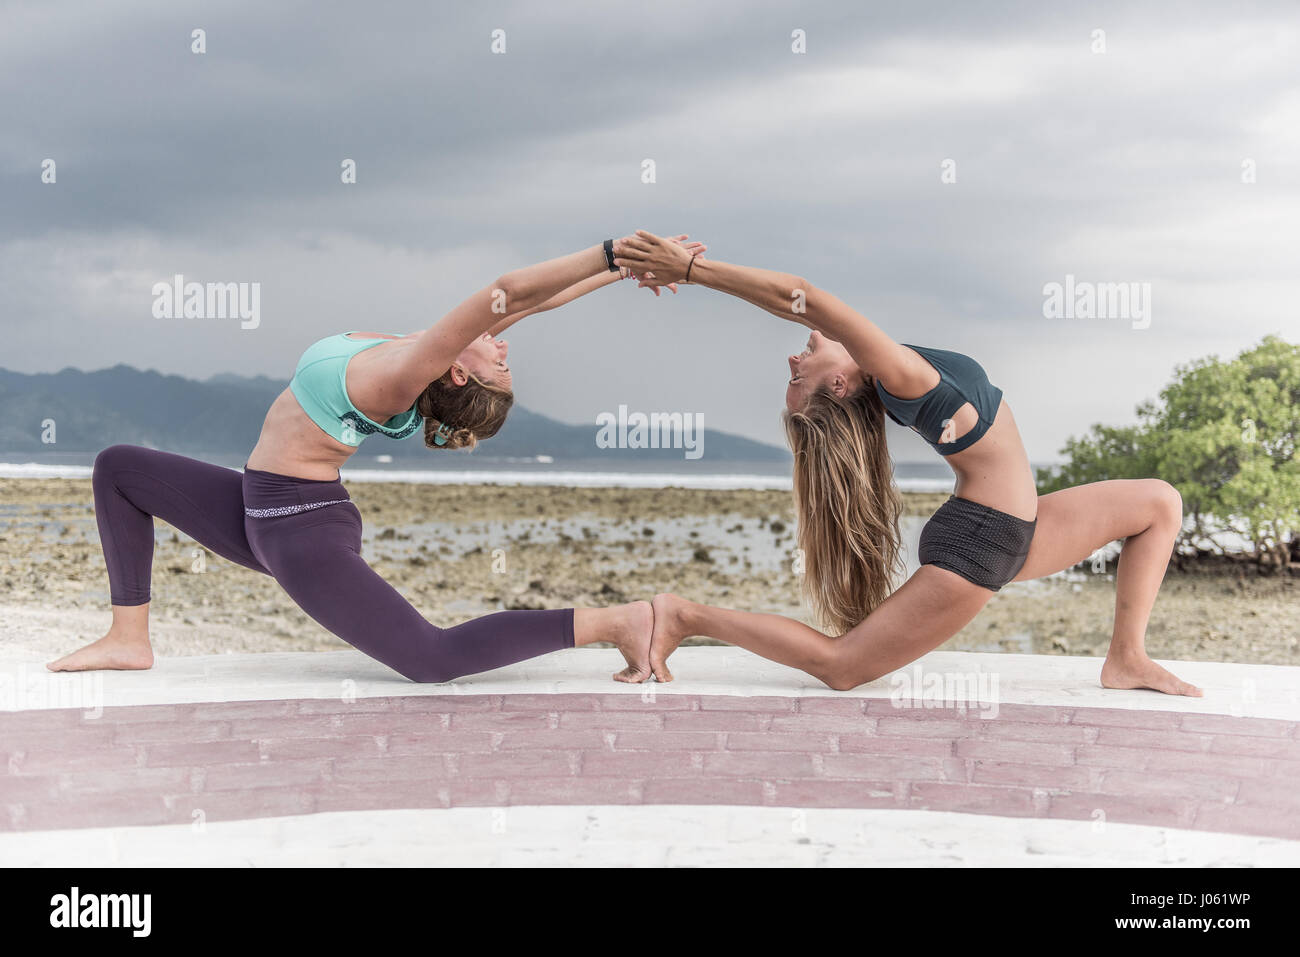 Satisfacer el sorprendente campeón hembra apneista quién usa el yoga para ayudarla a descubrir nuevas profundidades de los océanos del mundo. La serie de imágenes y secuencias de vídeo majestuoso espectáculo formador de profesores de yoga y el apneista, Kate Middleton (29), que puede contener su respiración por un increíble seis-y-uno-mitad-minutos debajo del agua, realizando camello yoga plantea en una piscina piso y golpeando una pose dentro de un hula hoop en el lecho marino. Otras fotografías muestran a Kate realizar ambiciosos posturas de yoga en tierra seca con un socio en una pared y golpeando una división permanente en una puerta. Foto de stock